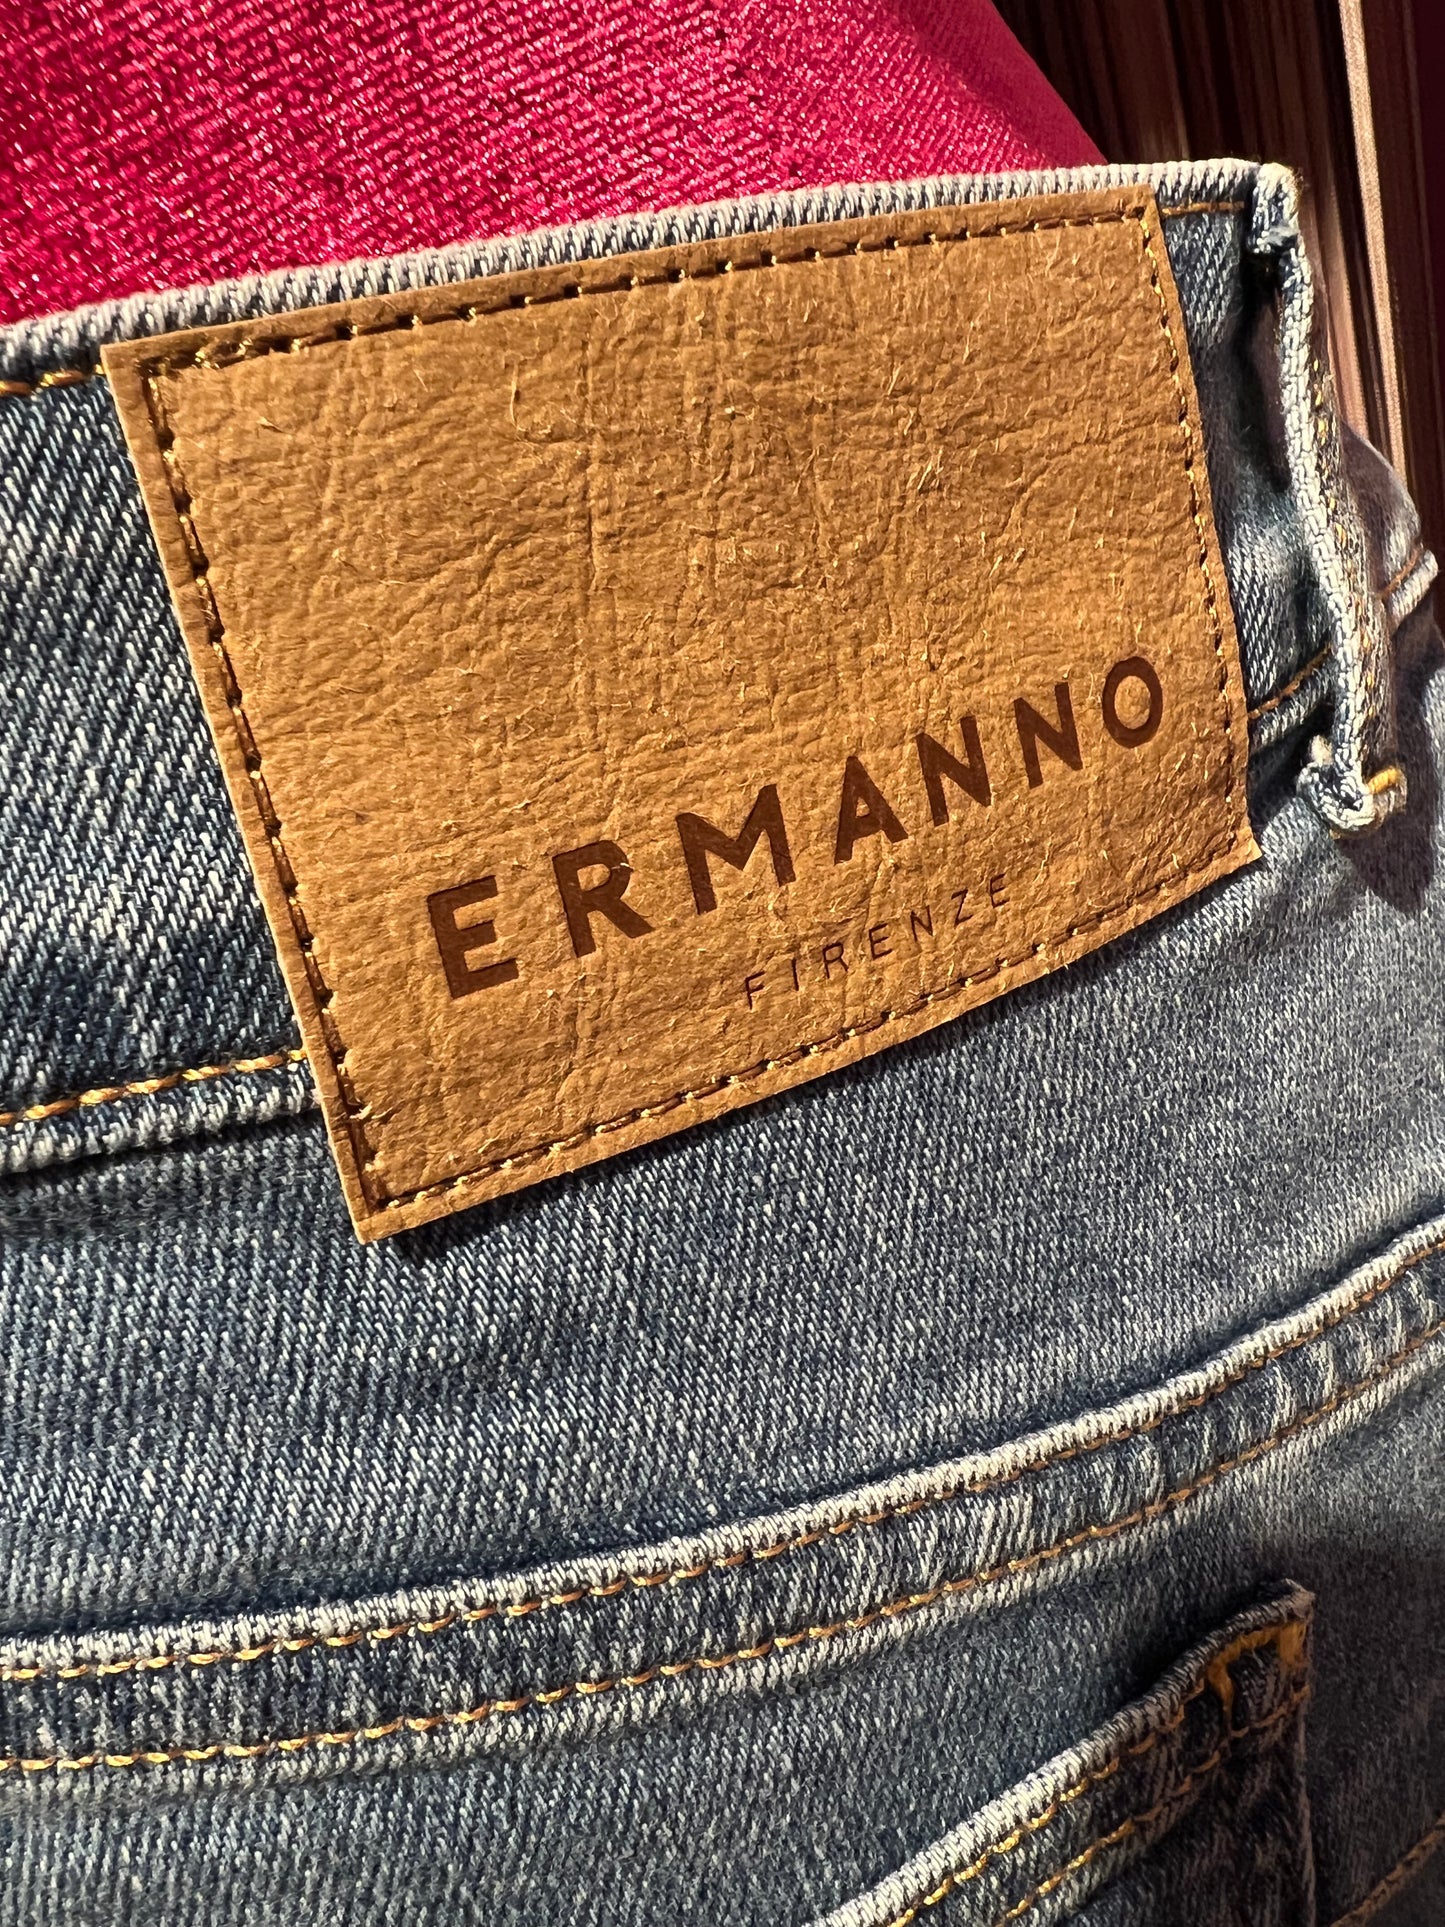 Ermanno Scervino meno 50% jeans slim 5tasche con applicazioni pizzo